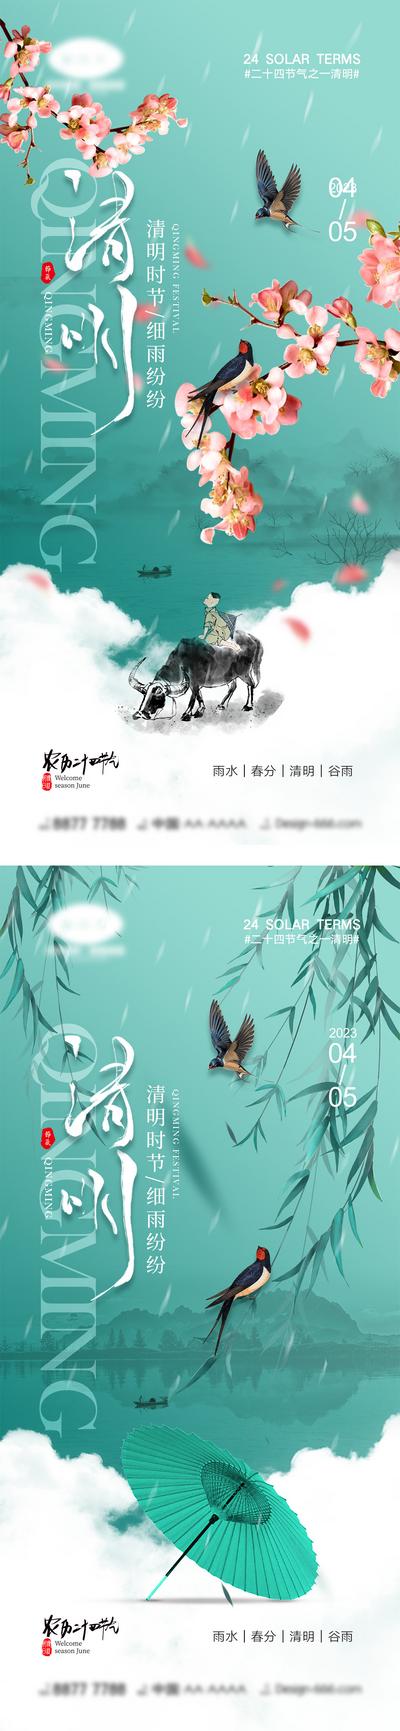 南门网 海报 二十四节气 中国传统节日 雨水 春分 清明节 谷雨 下雨 柳树 山水 绘画 燕子